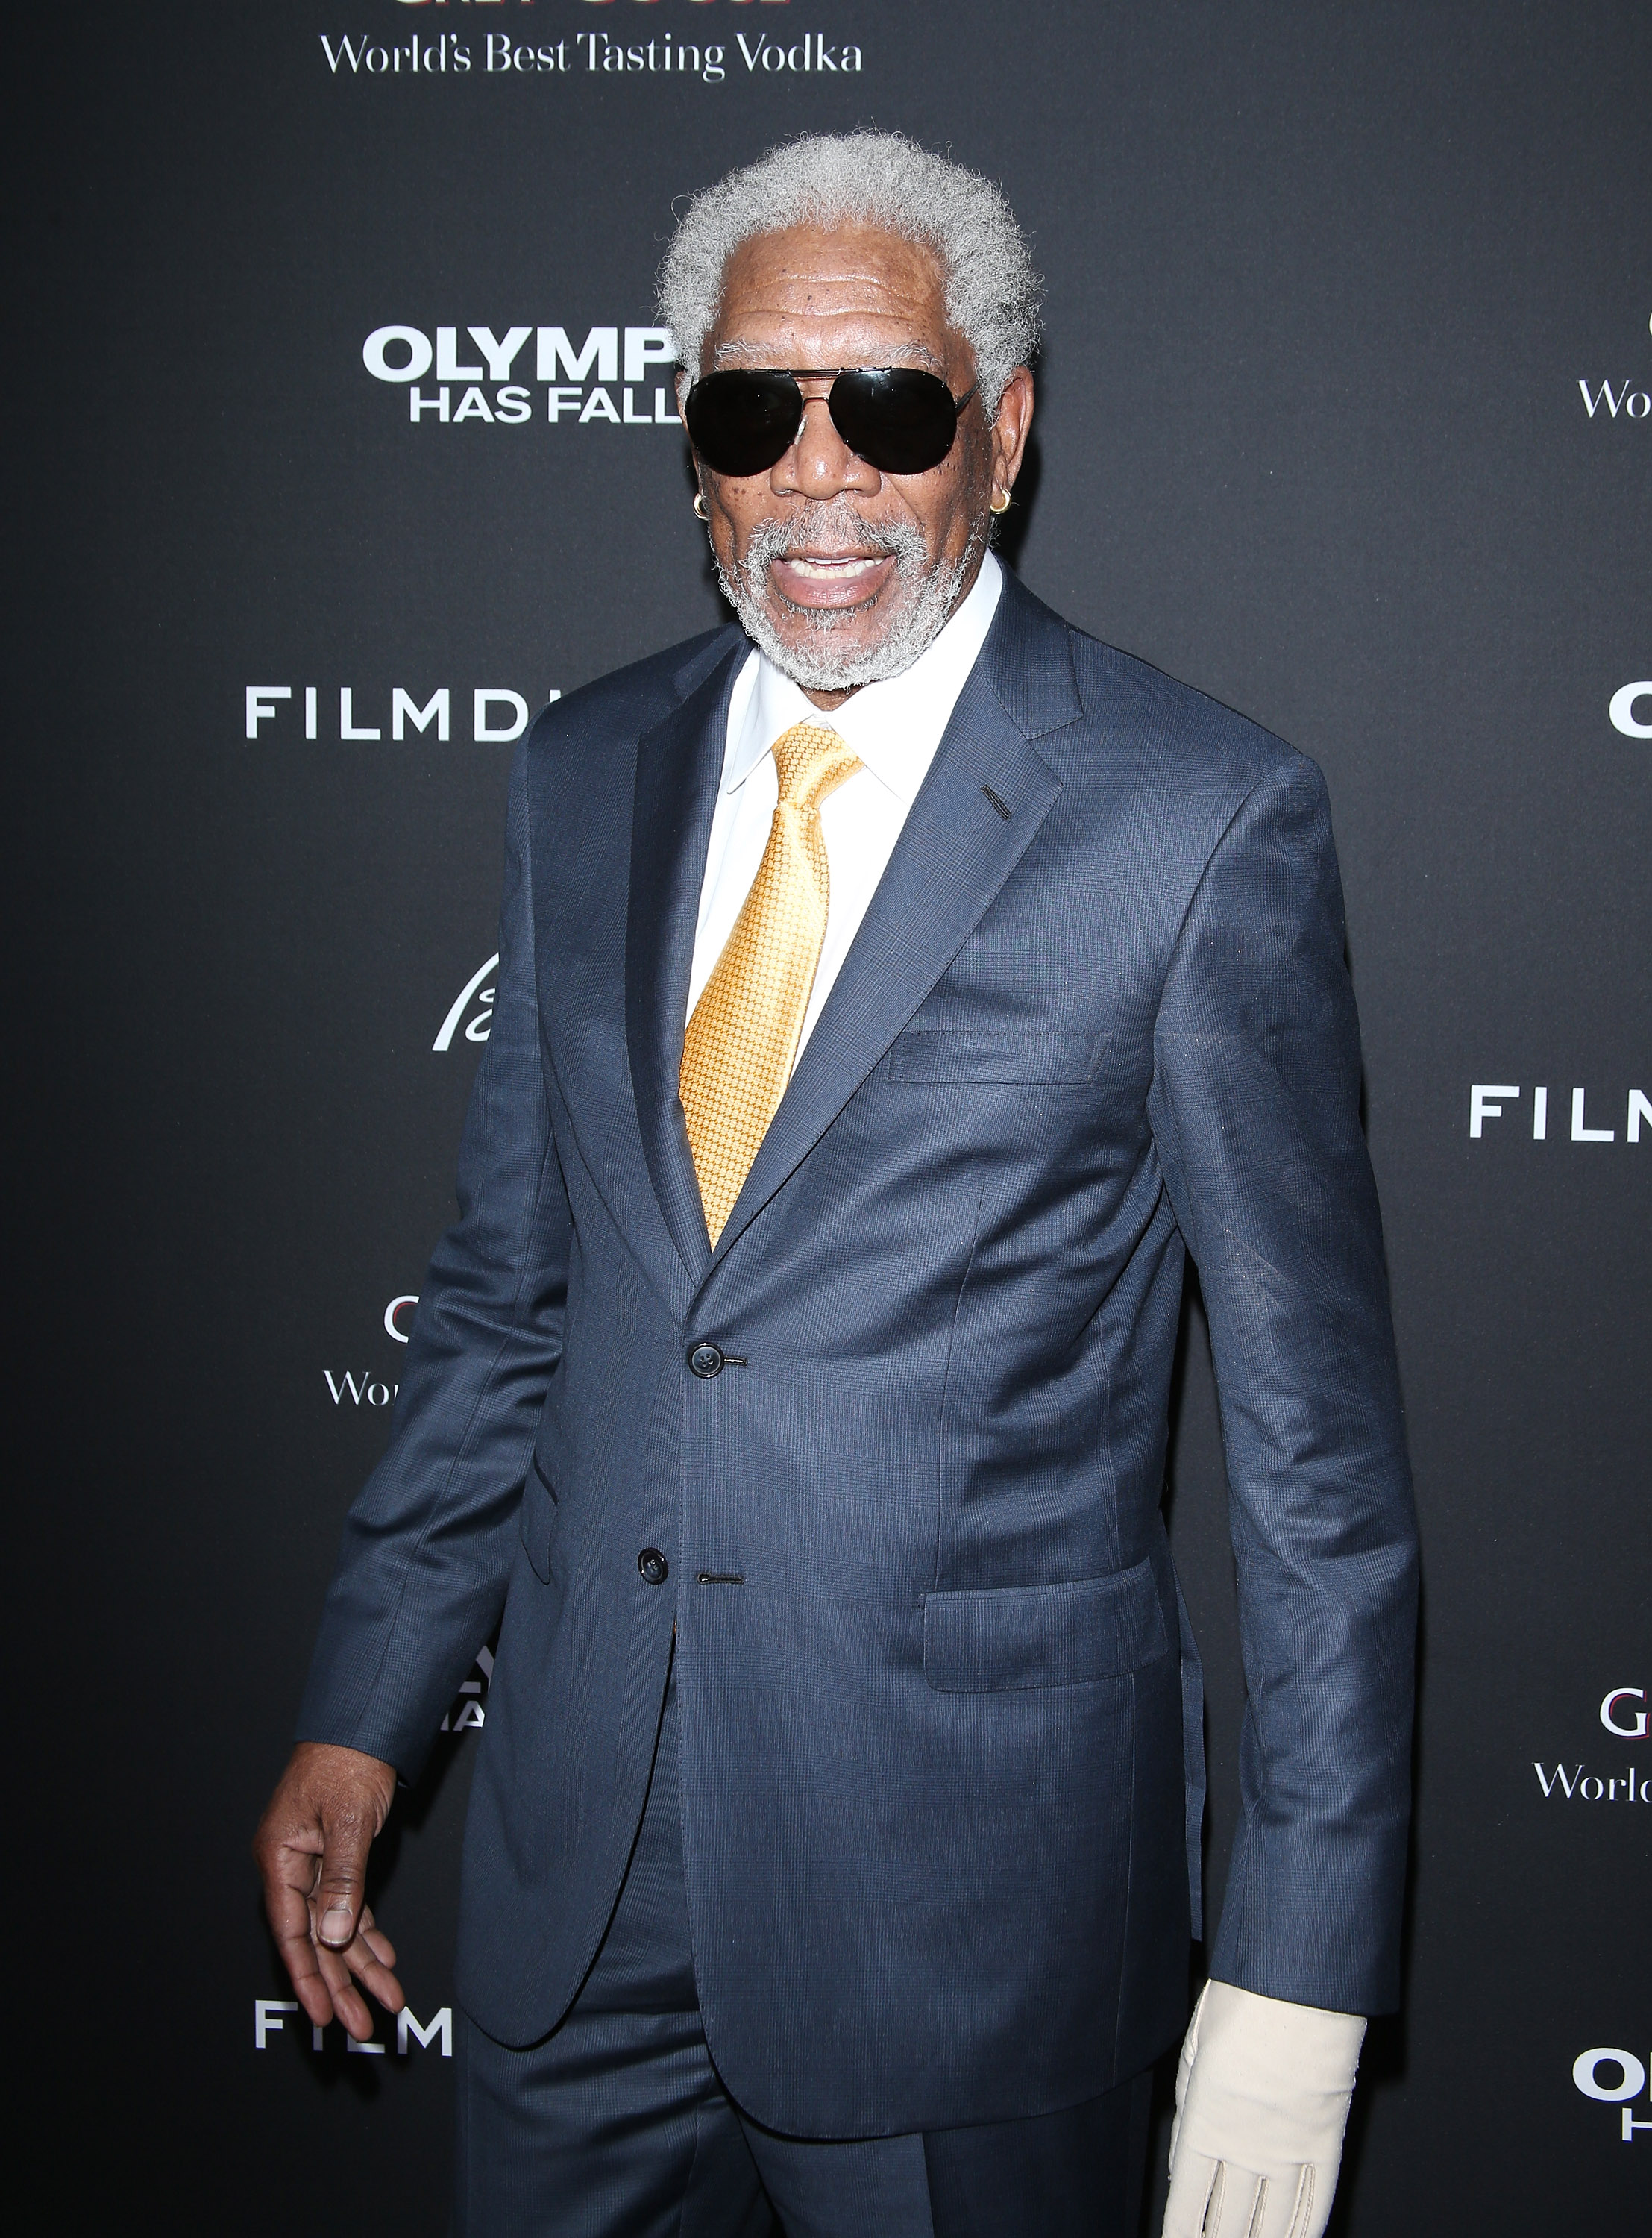 Morgan Freeman à la première mondiale de "Olympus Has Fallen" au Brioni Sponsors Film District en 2013 | Source : Getty Images